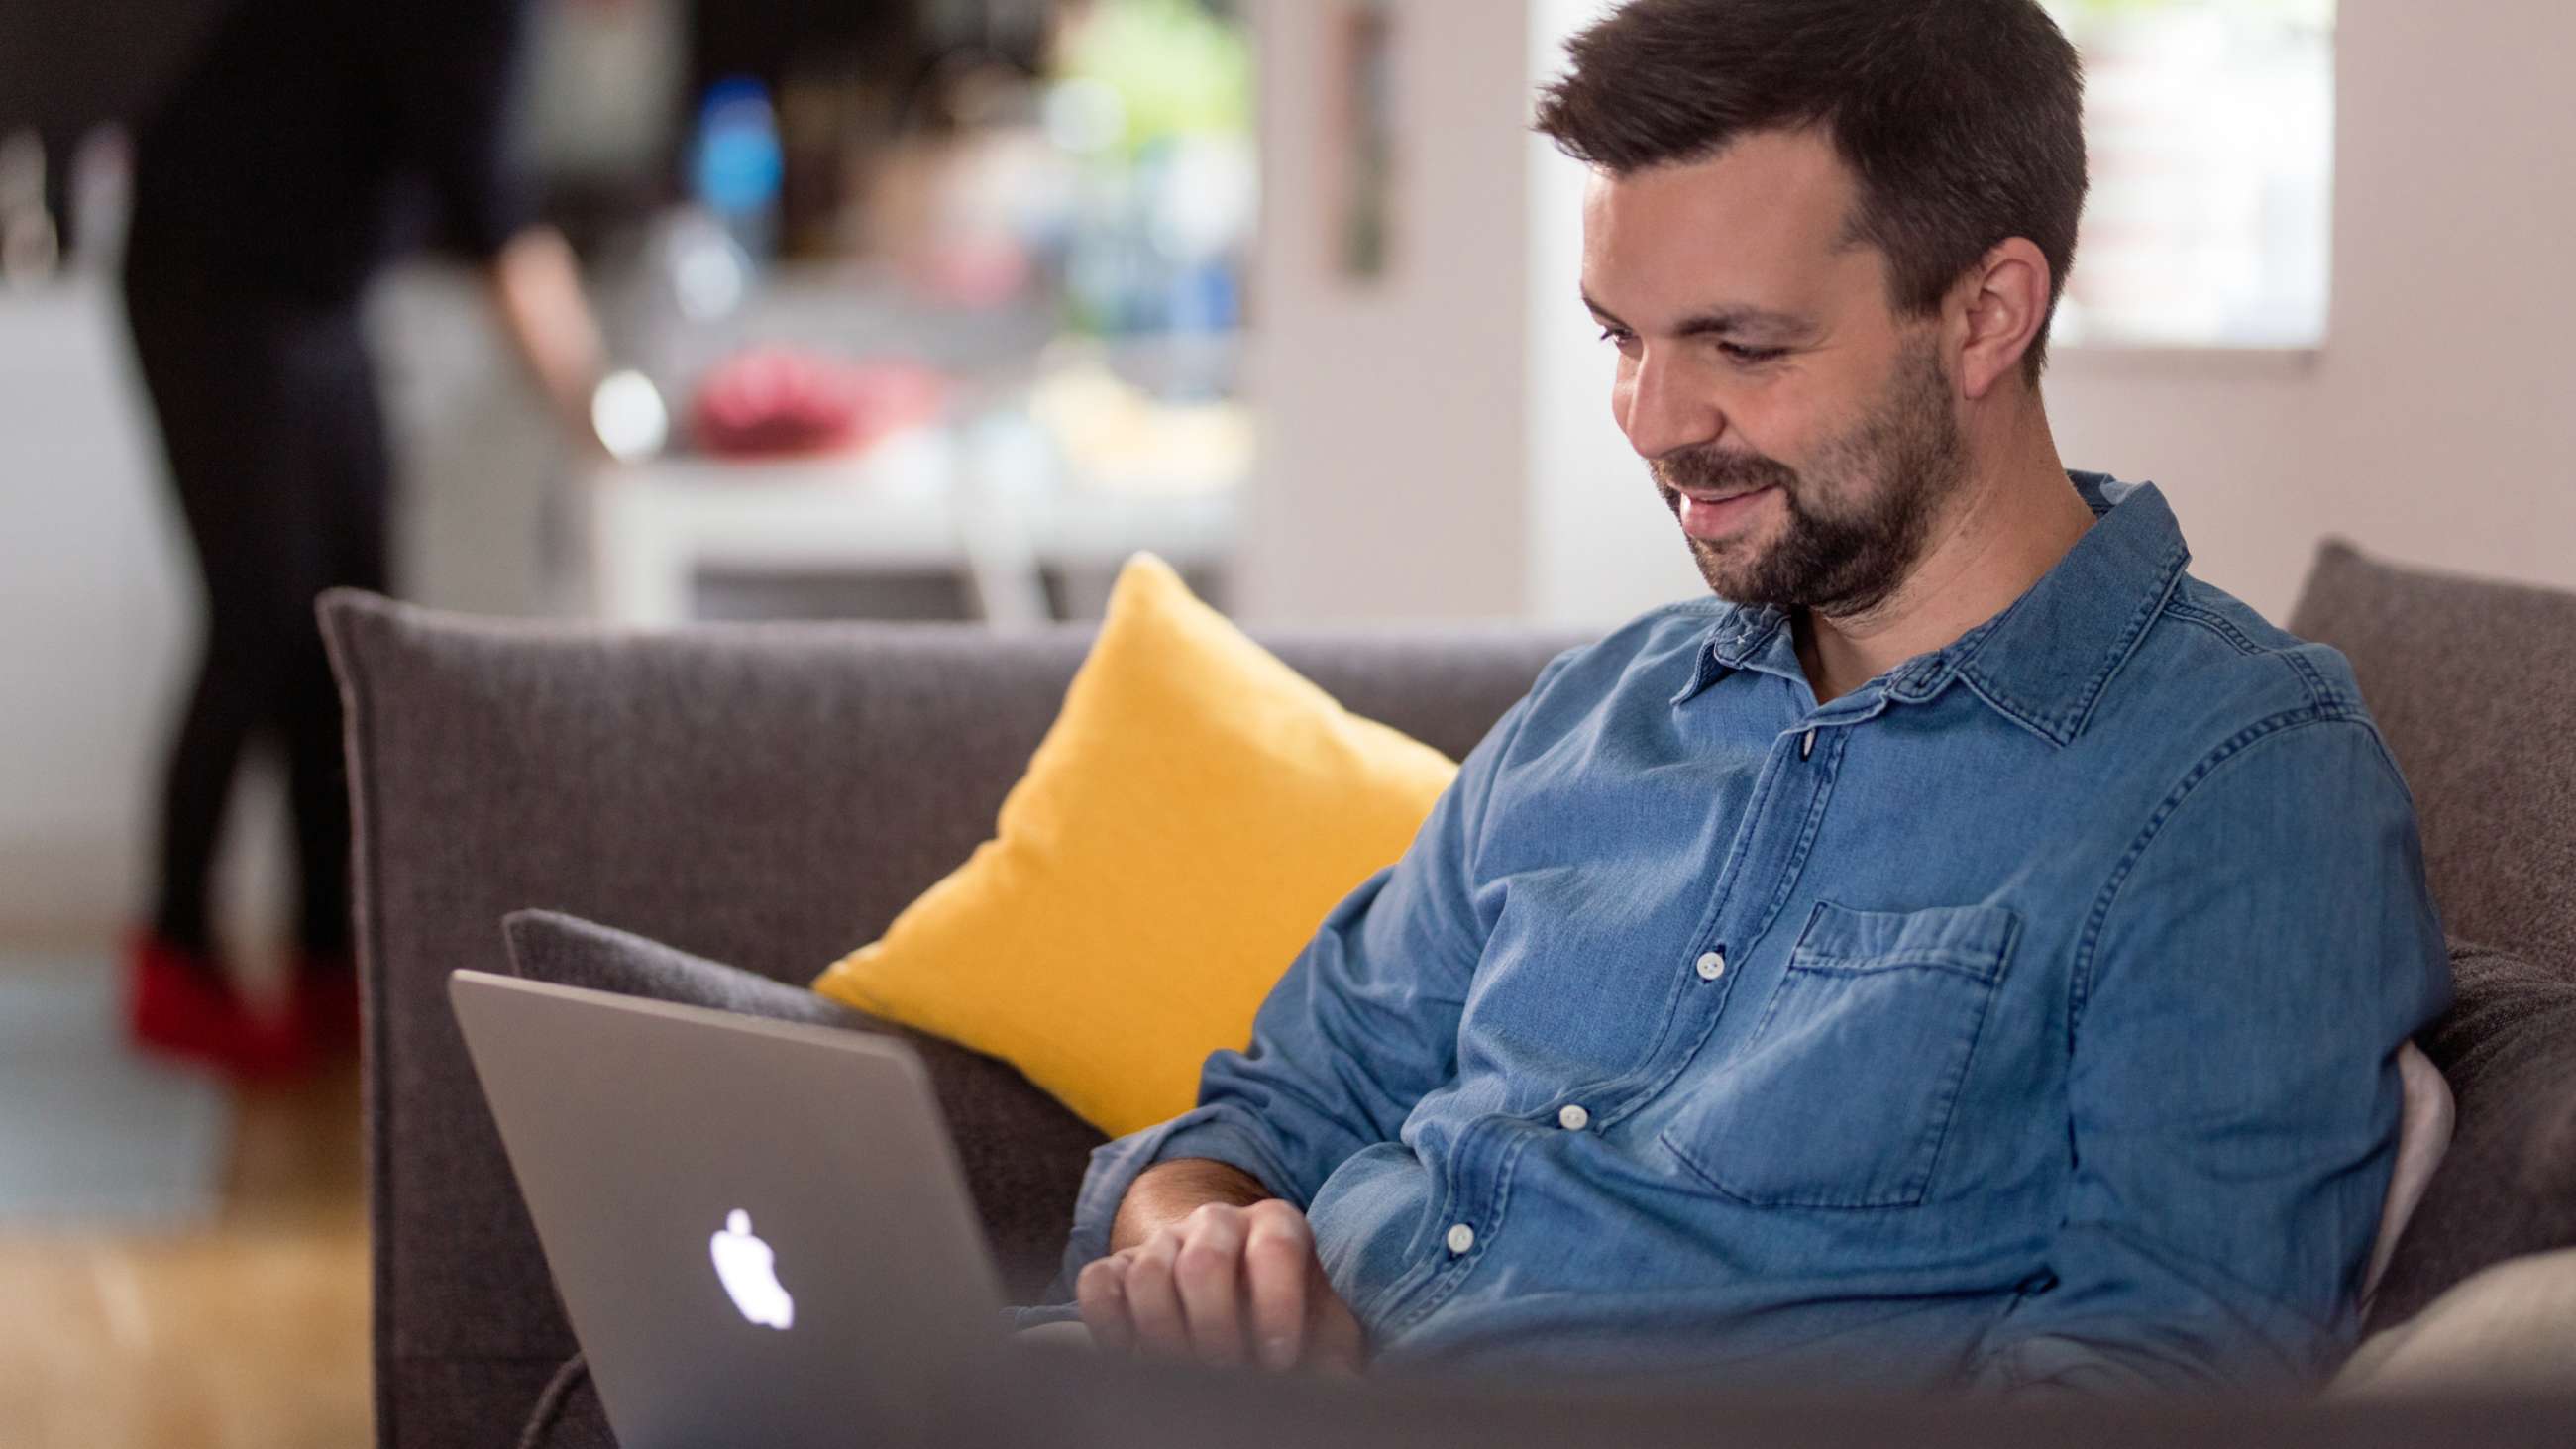 Ung mann med skjegg og jeansskjorte sitter smilende i sofaen, med en laptop på fanget